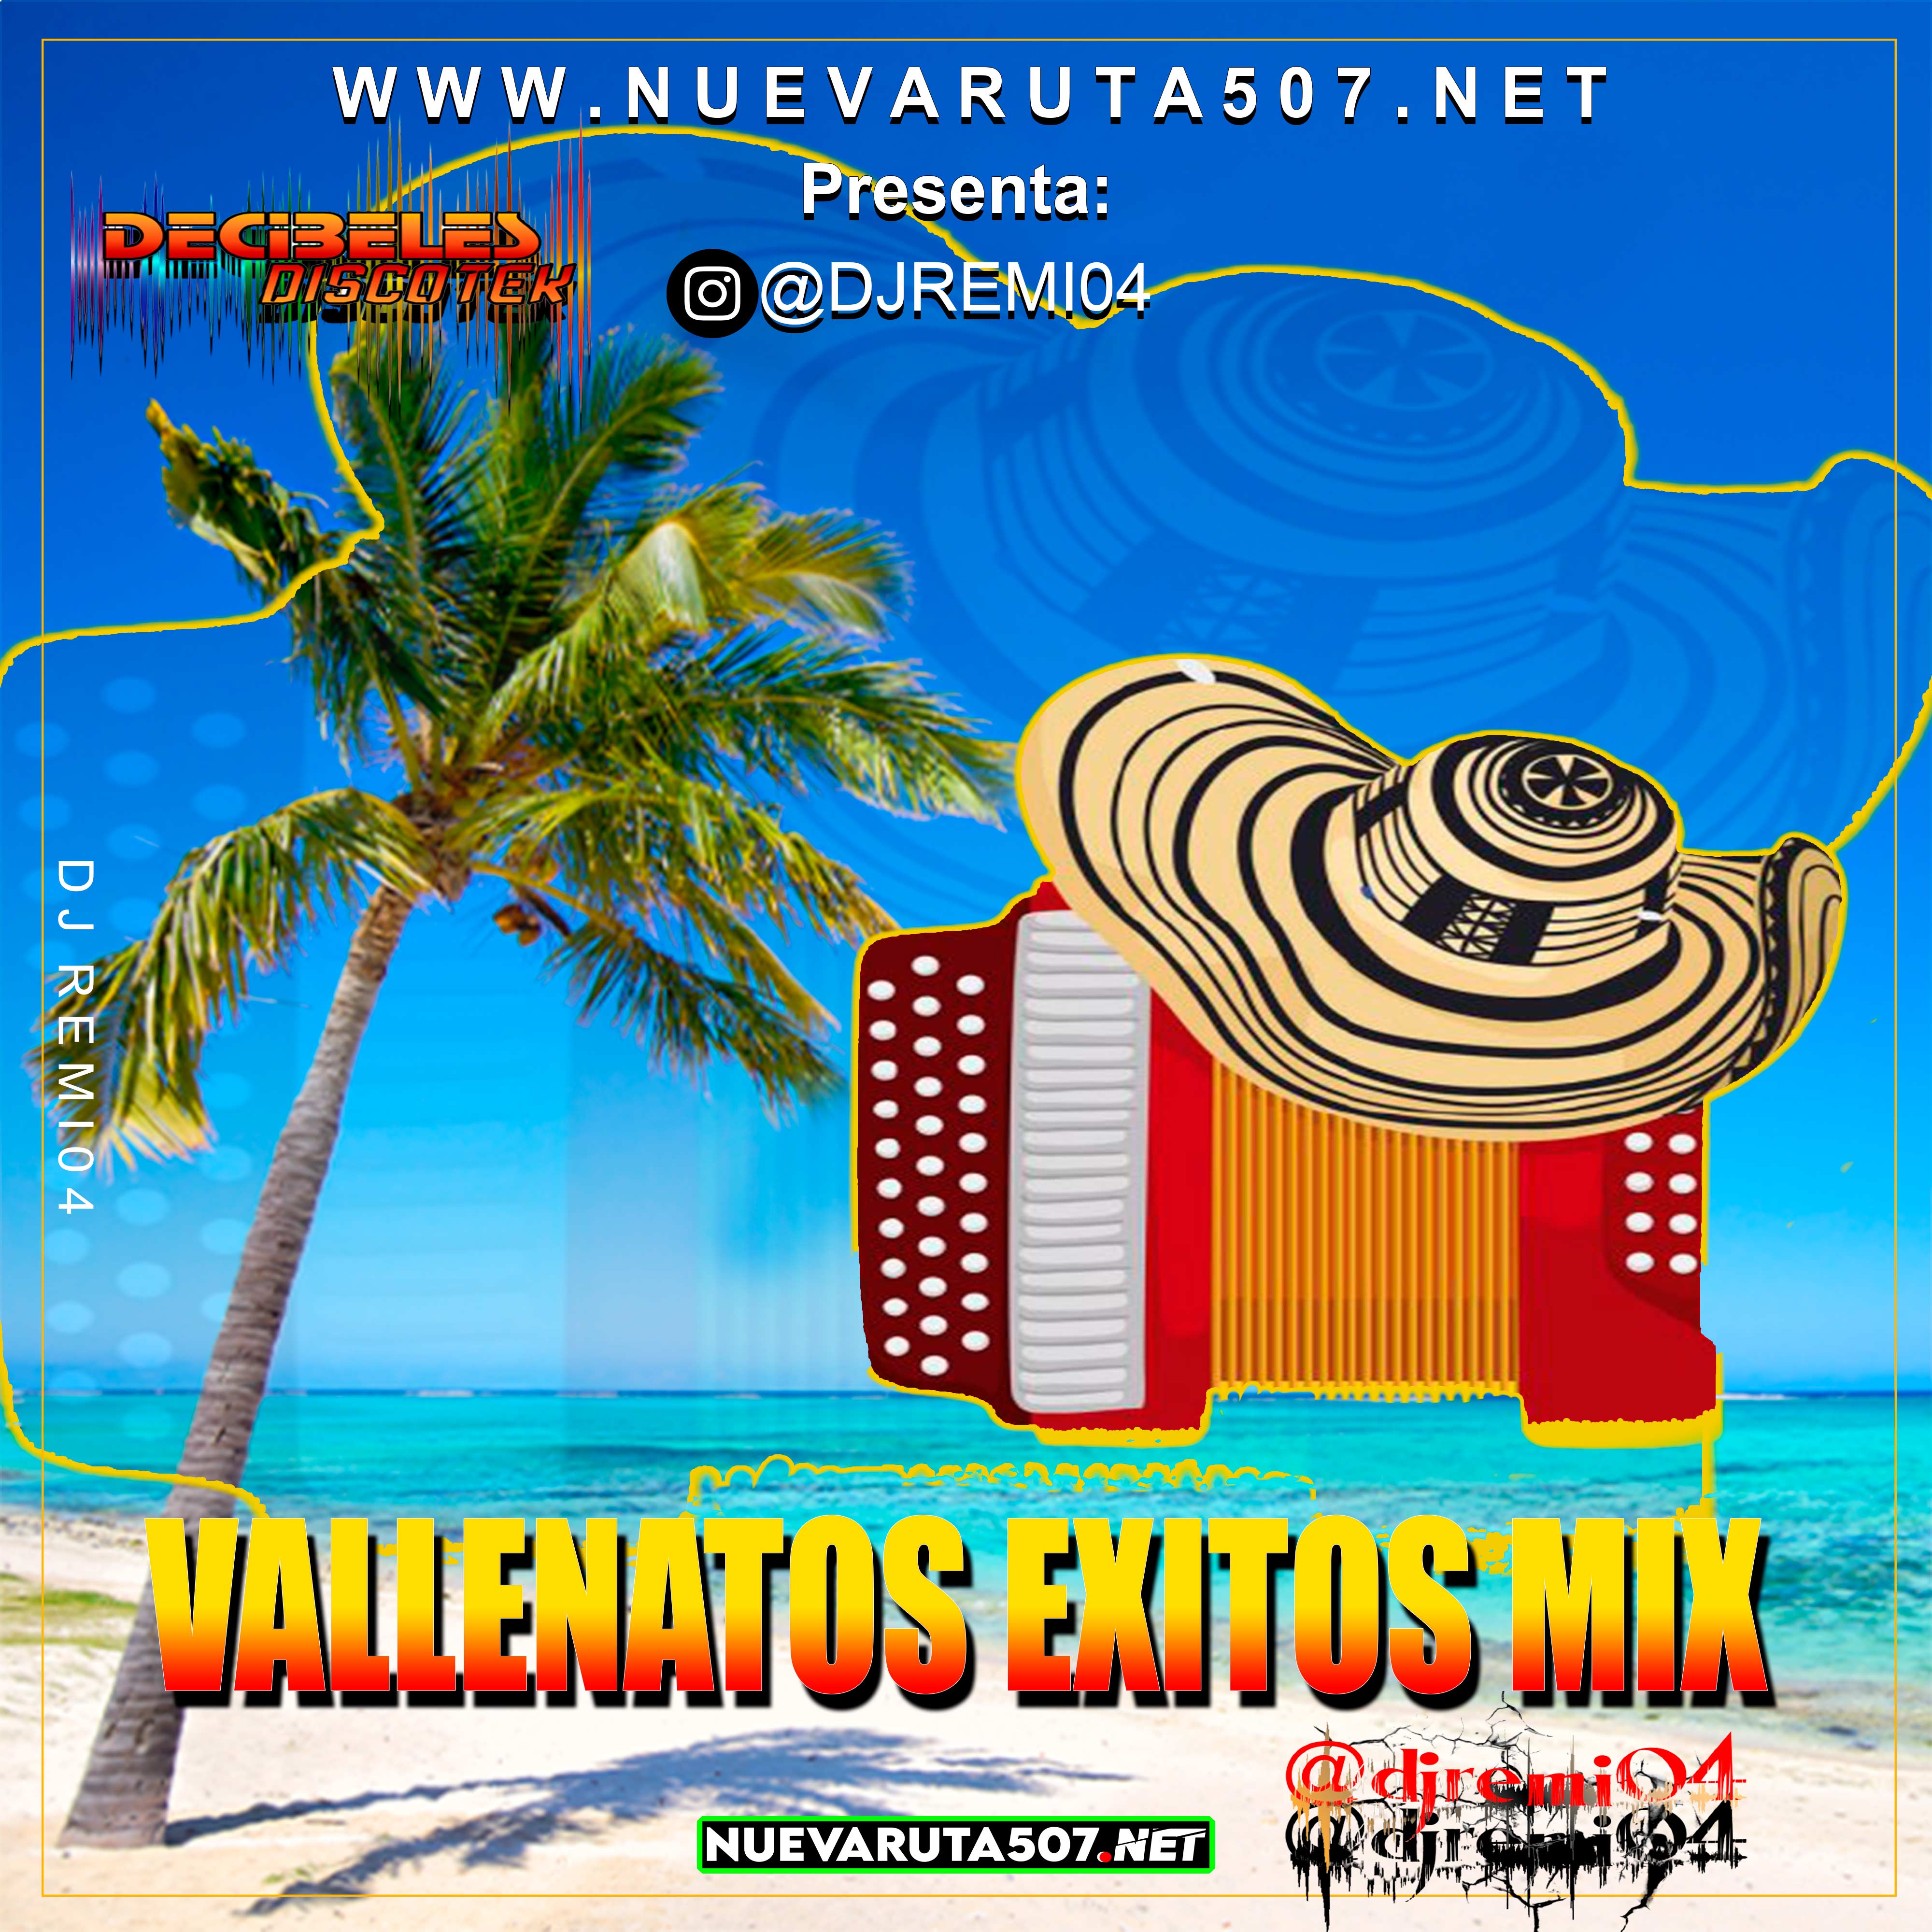 Vallenatos Exitos Mix - Dj Remi04.mp3